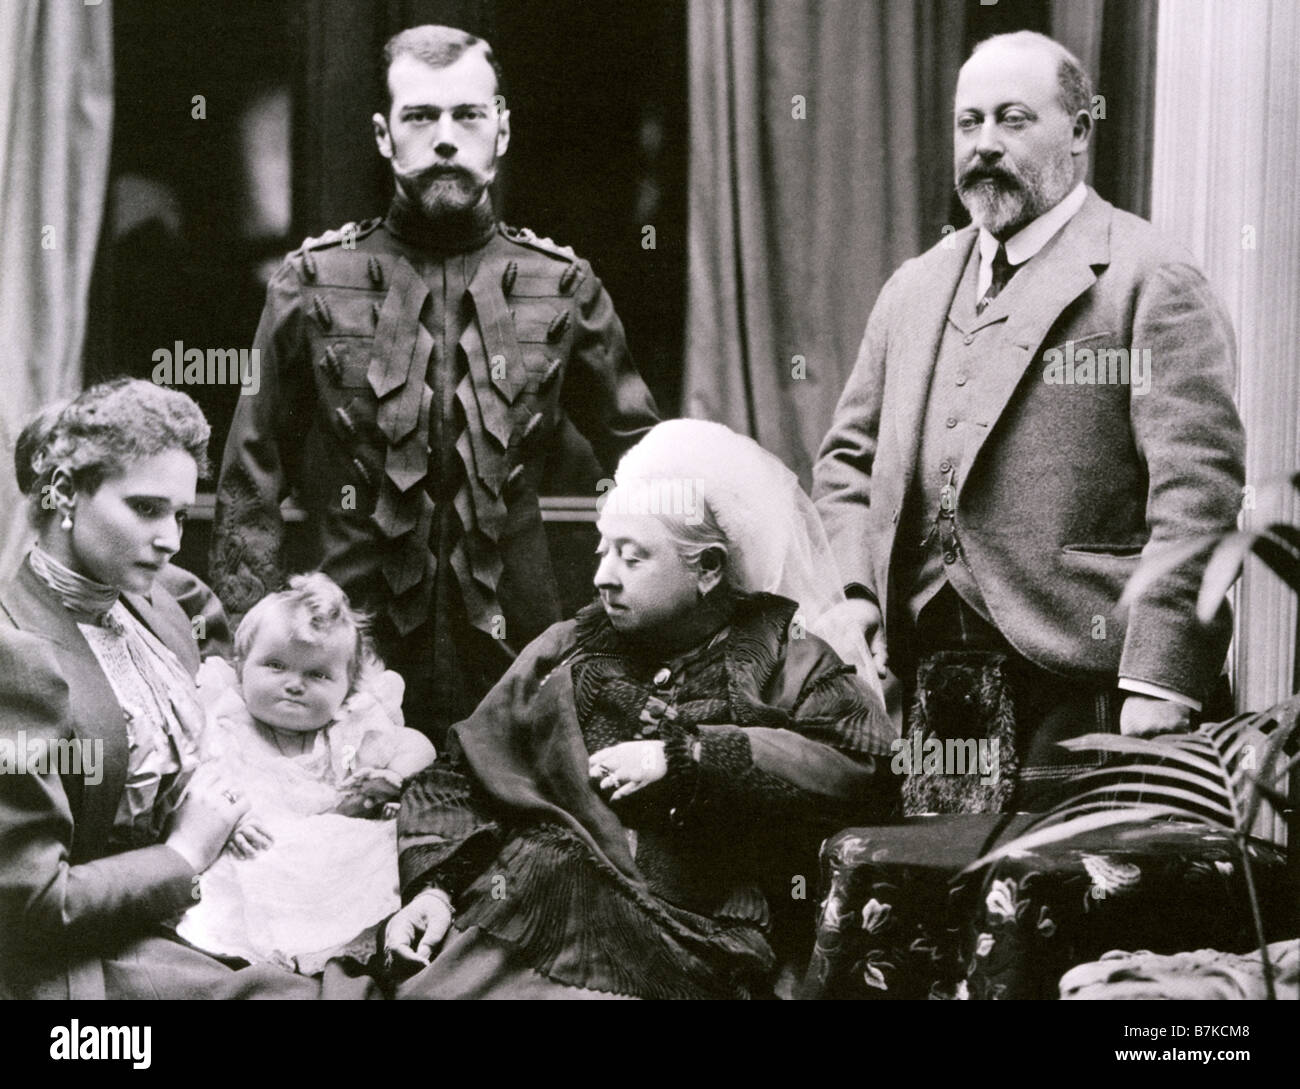 La regina Victoria and Albert Edward Principe di Galles sono visitati presso il Castello di Balmoral dello zar Nicola - vedere la descrizione riportata di seguito Foto Stock